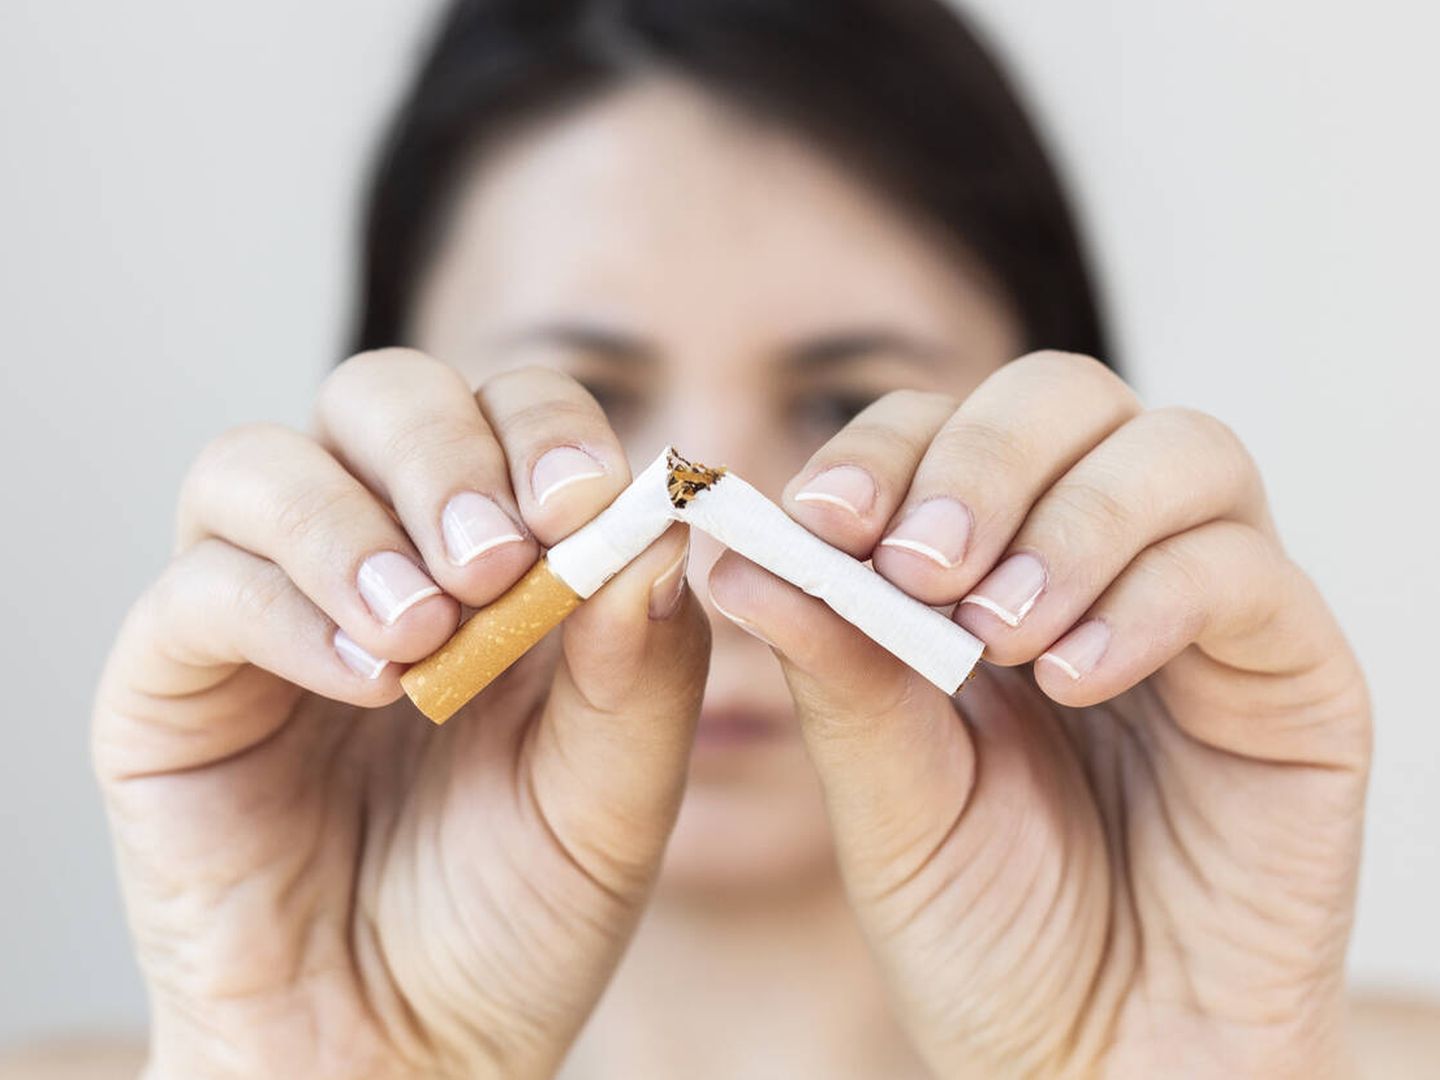 Los beneficios de abandonar el tabaco siempre son mayores que un aumento de peso. (iStock)